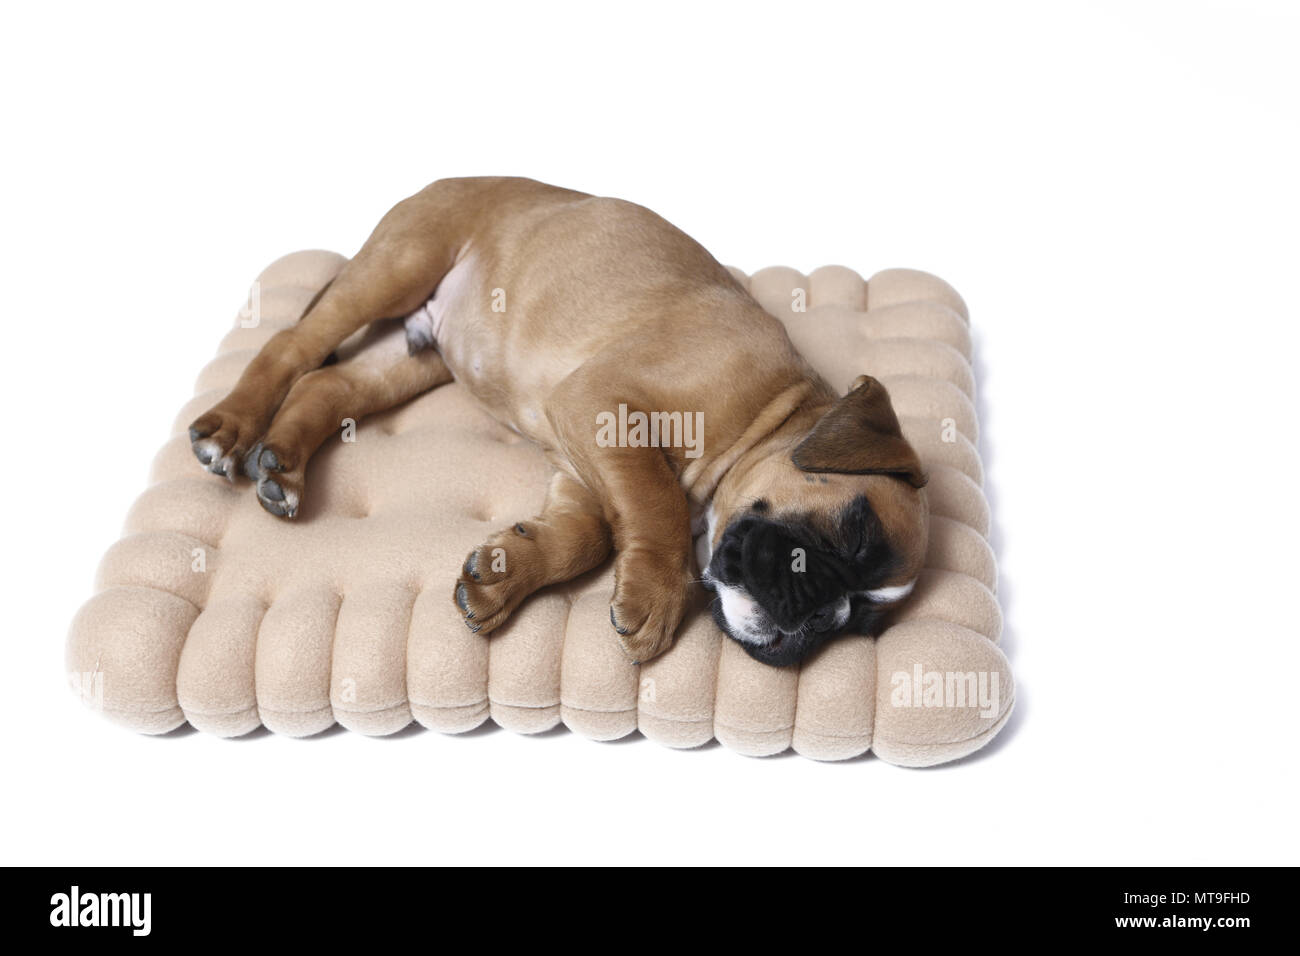 Boxeur allemand. Puppy (7 semaines) de dormir sur un coussin en forme de cookie. Studio photo Banque D'Images